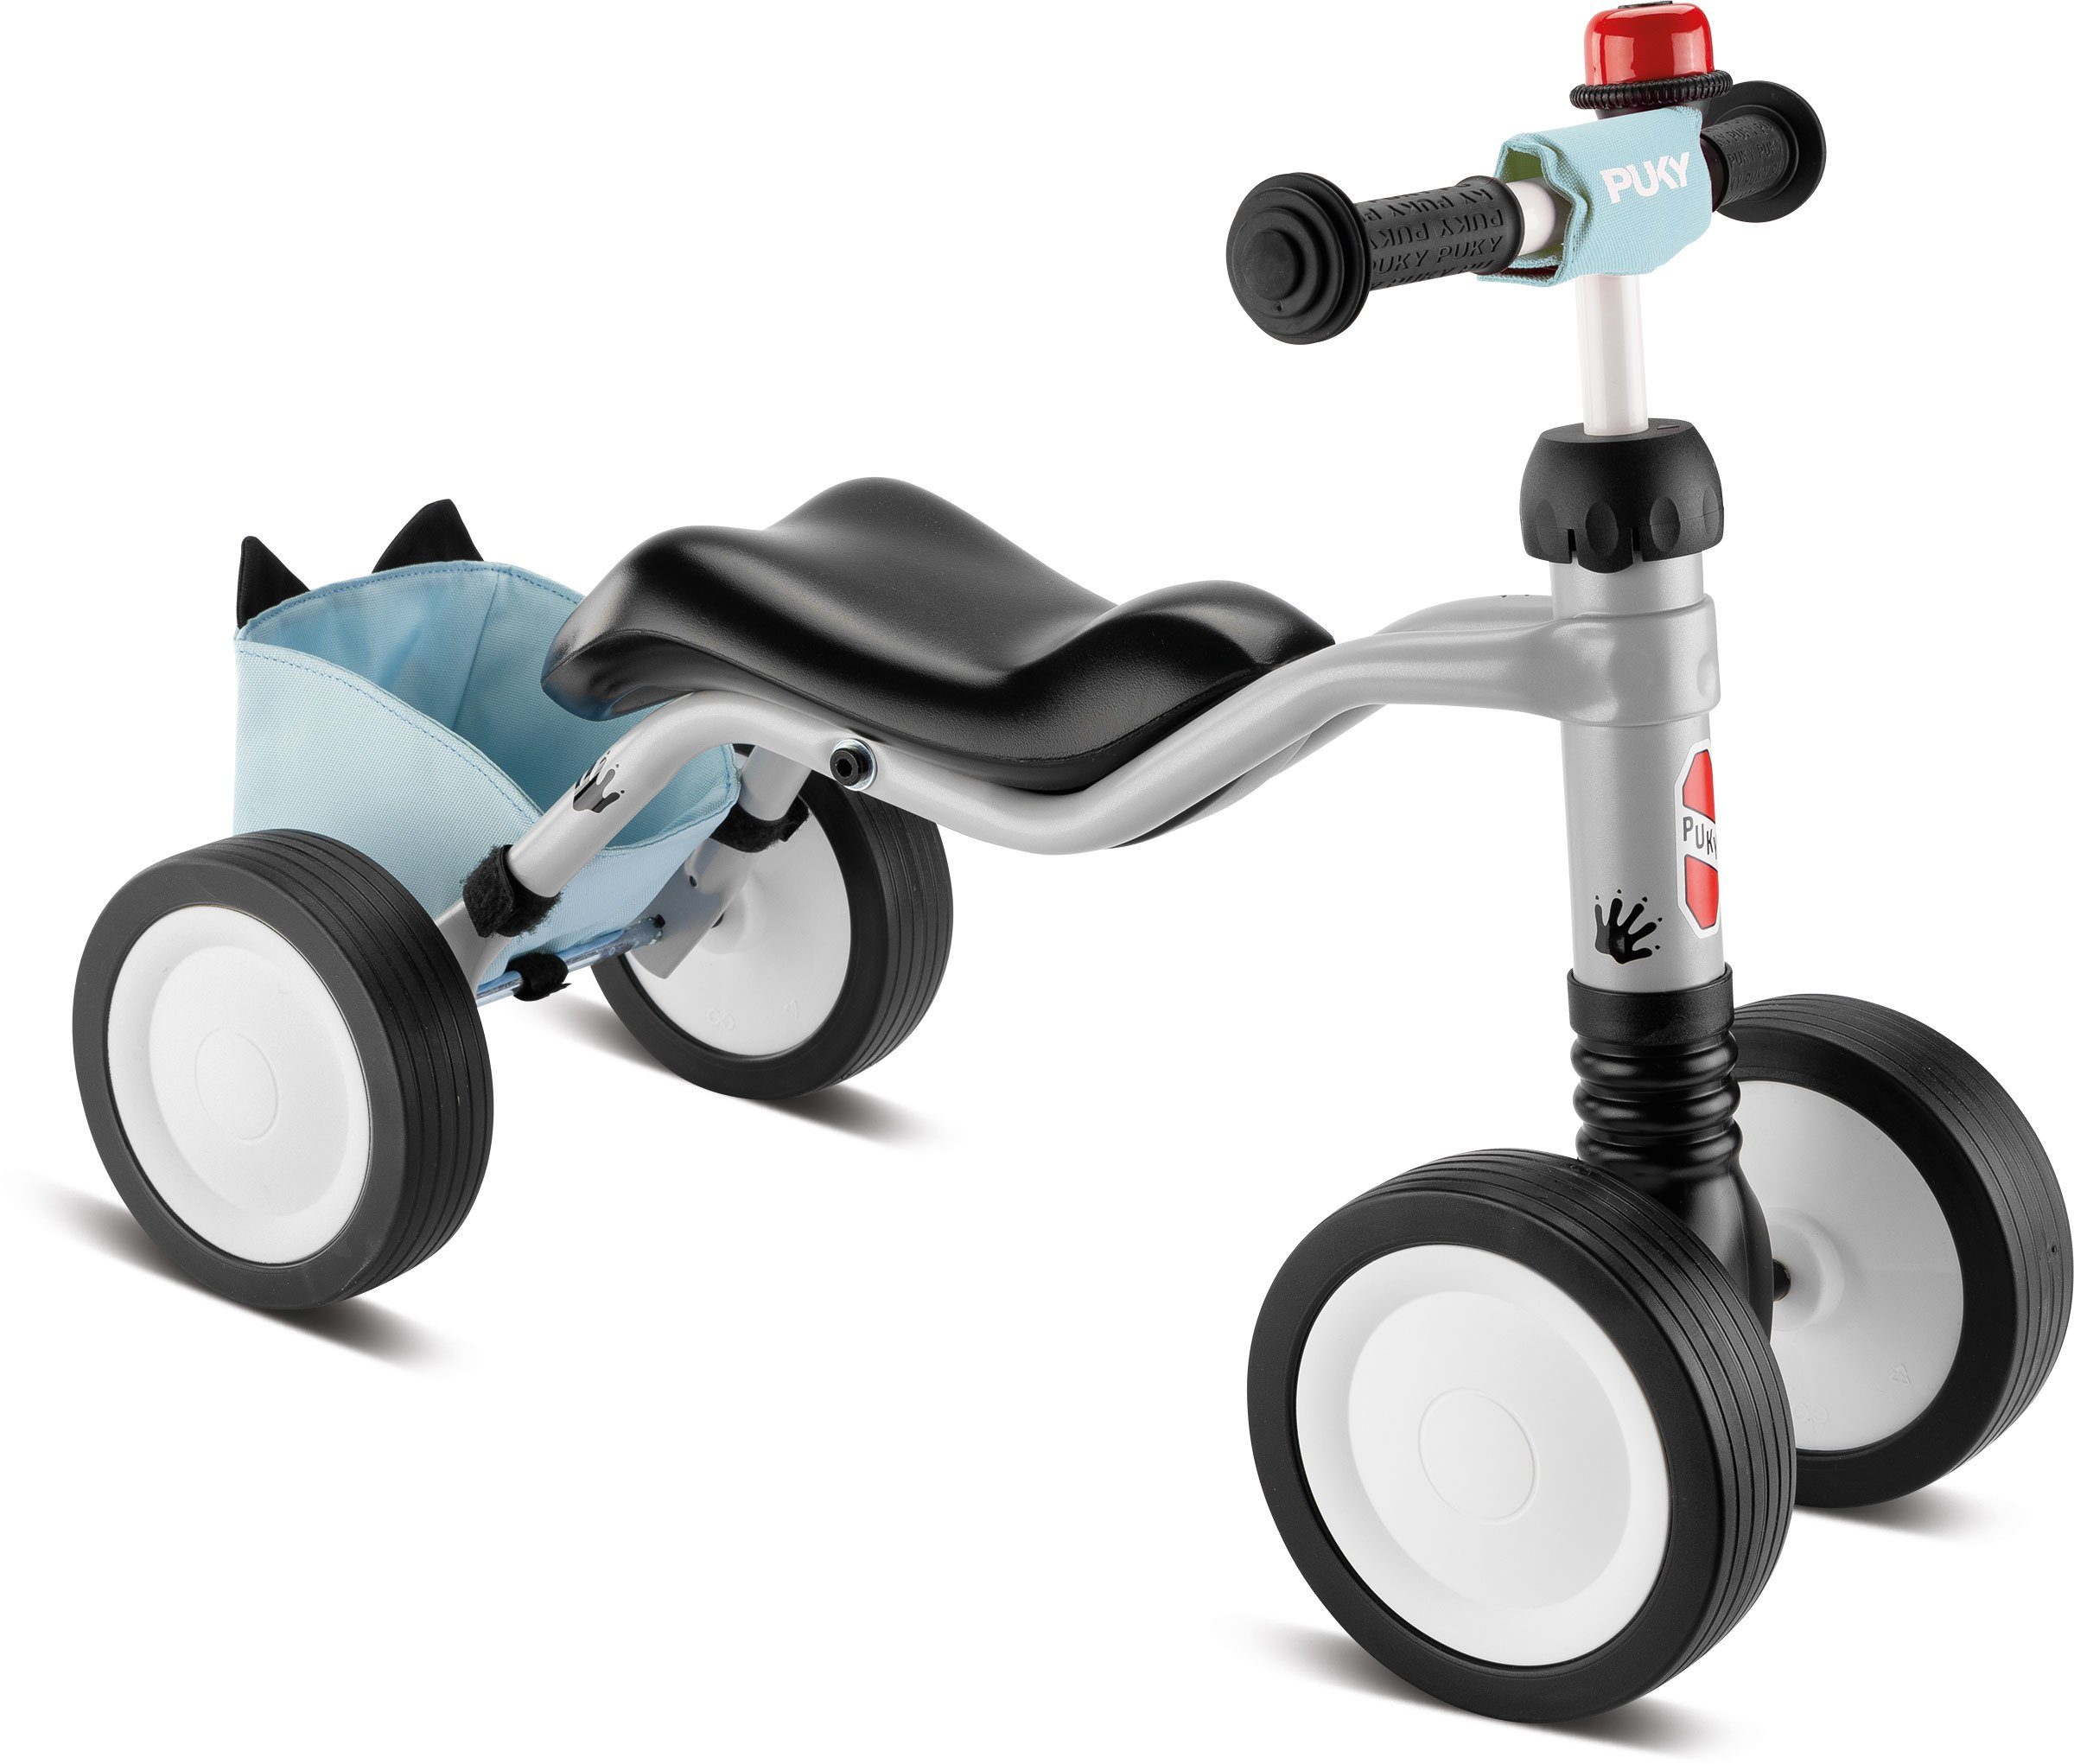 Puky Laufrad Puky Wutsch Laufrad Bundle, sicheres Rutschfahrzeug, Rutschrad für Kleinkinder ab 1 Jahr mit leisen Laufrädern, Lenkeinschlagsbegrenzung und ergonomischem Sitz grey/lightblue